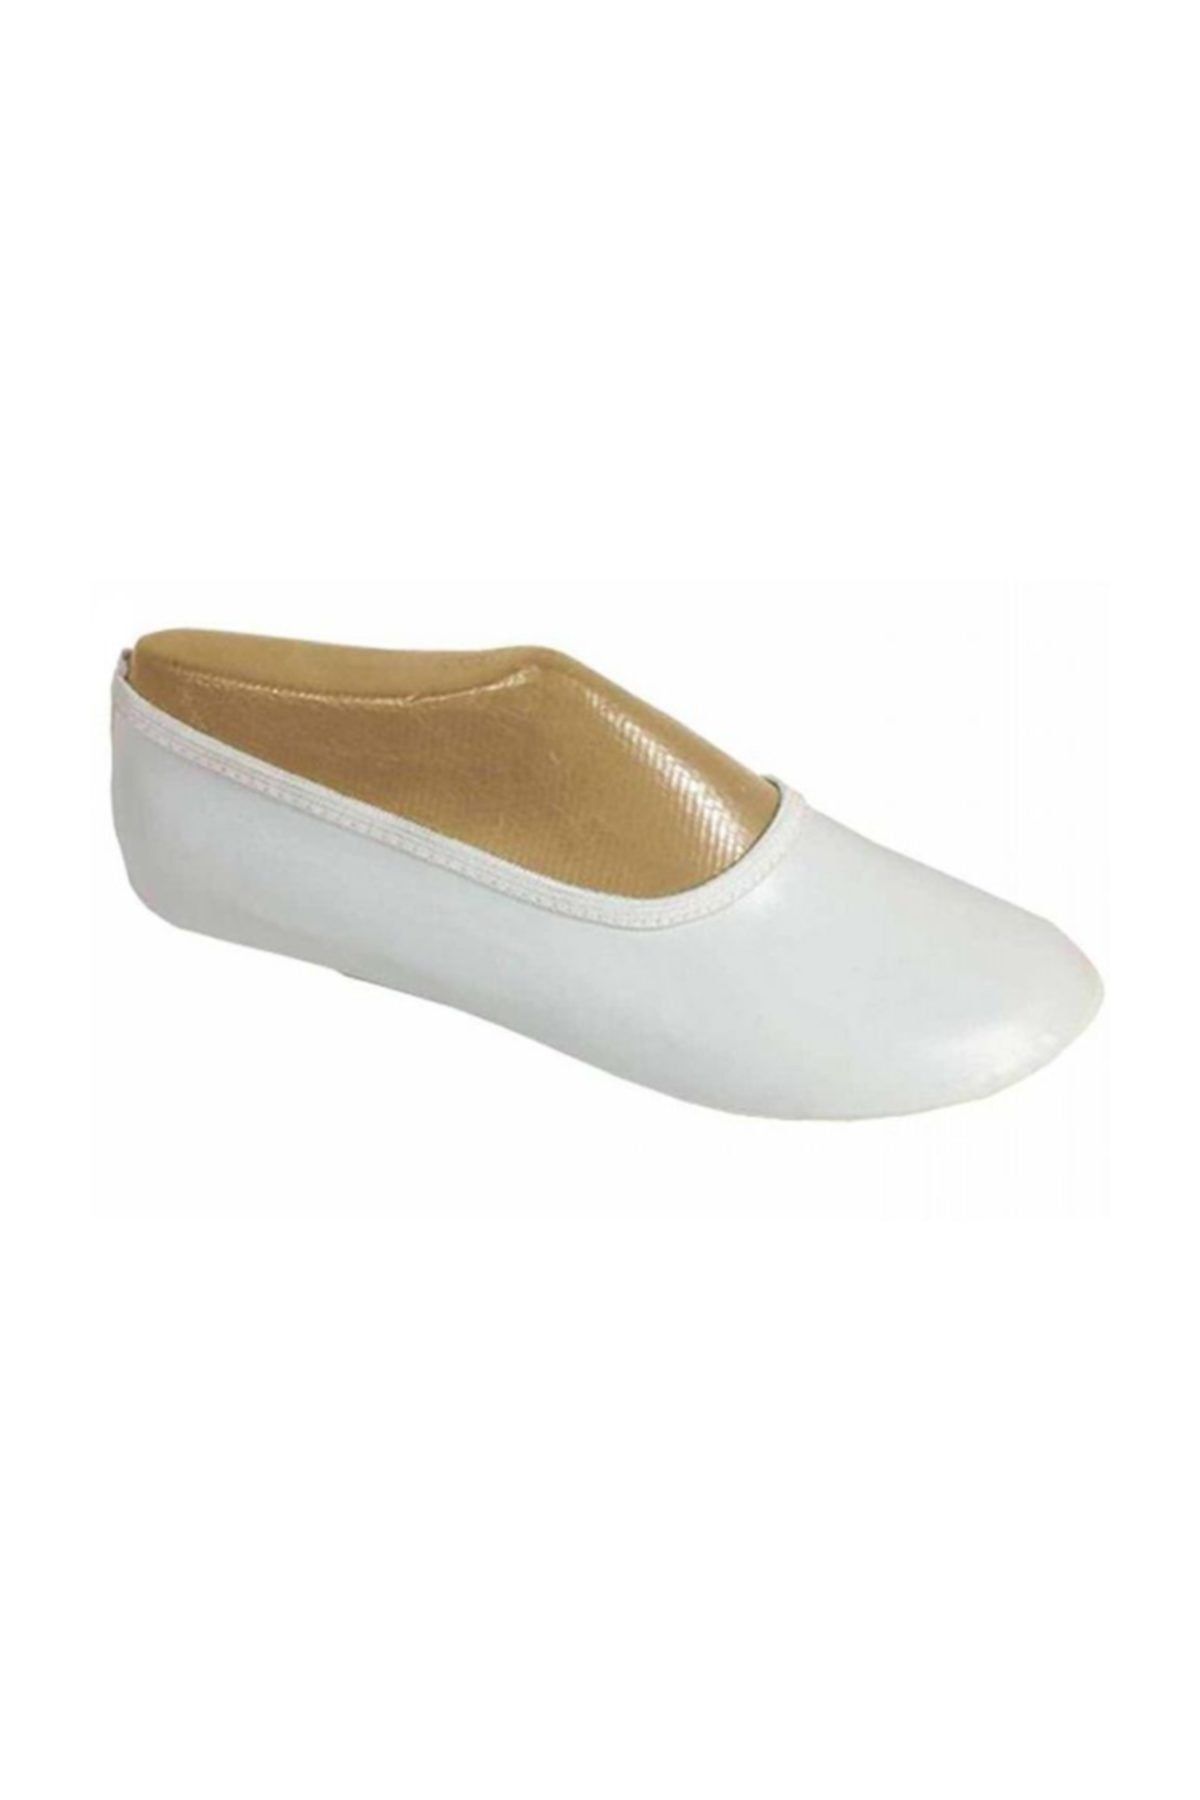 Pandoli Pisi Pisi Ayakkabısı Beyaz Renk 39 Numara